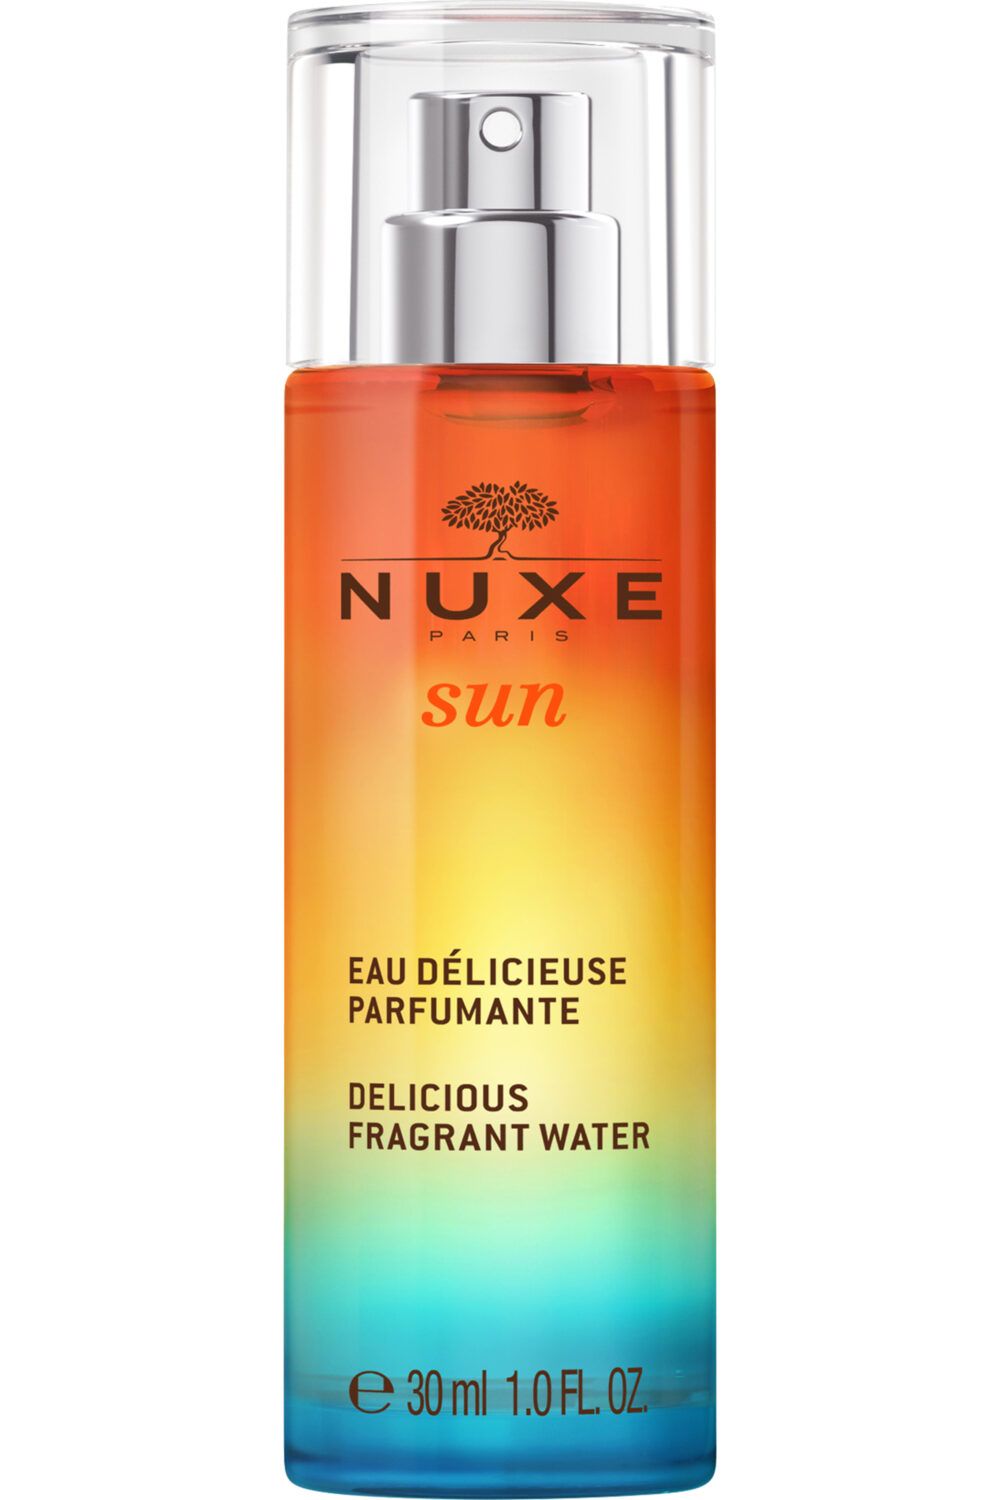 Nuxe - Eau délicieuse parfumante Nuxe Sun nouveau 30ml